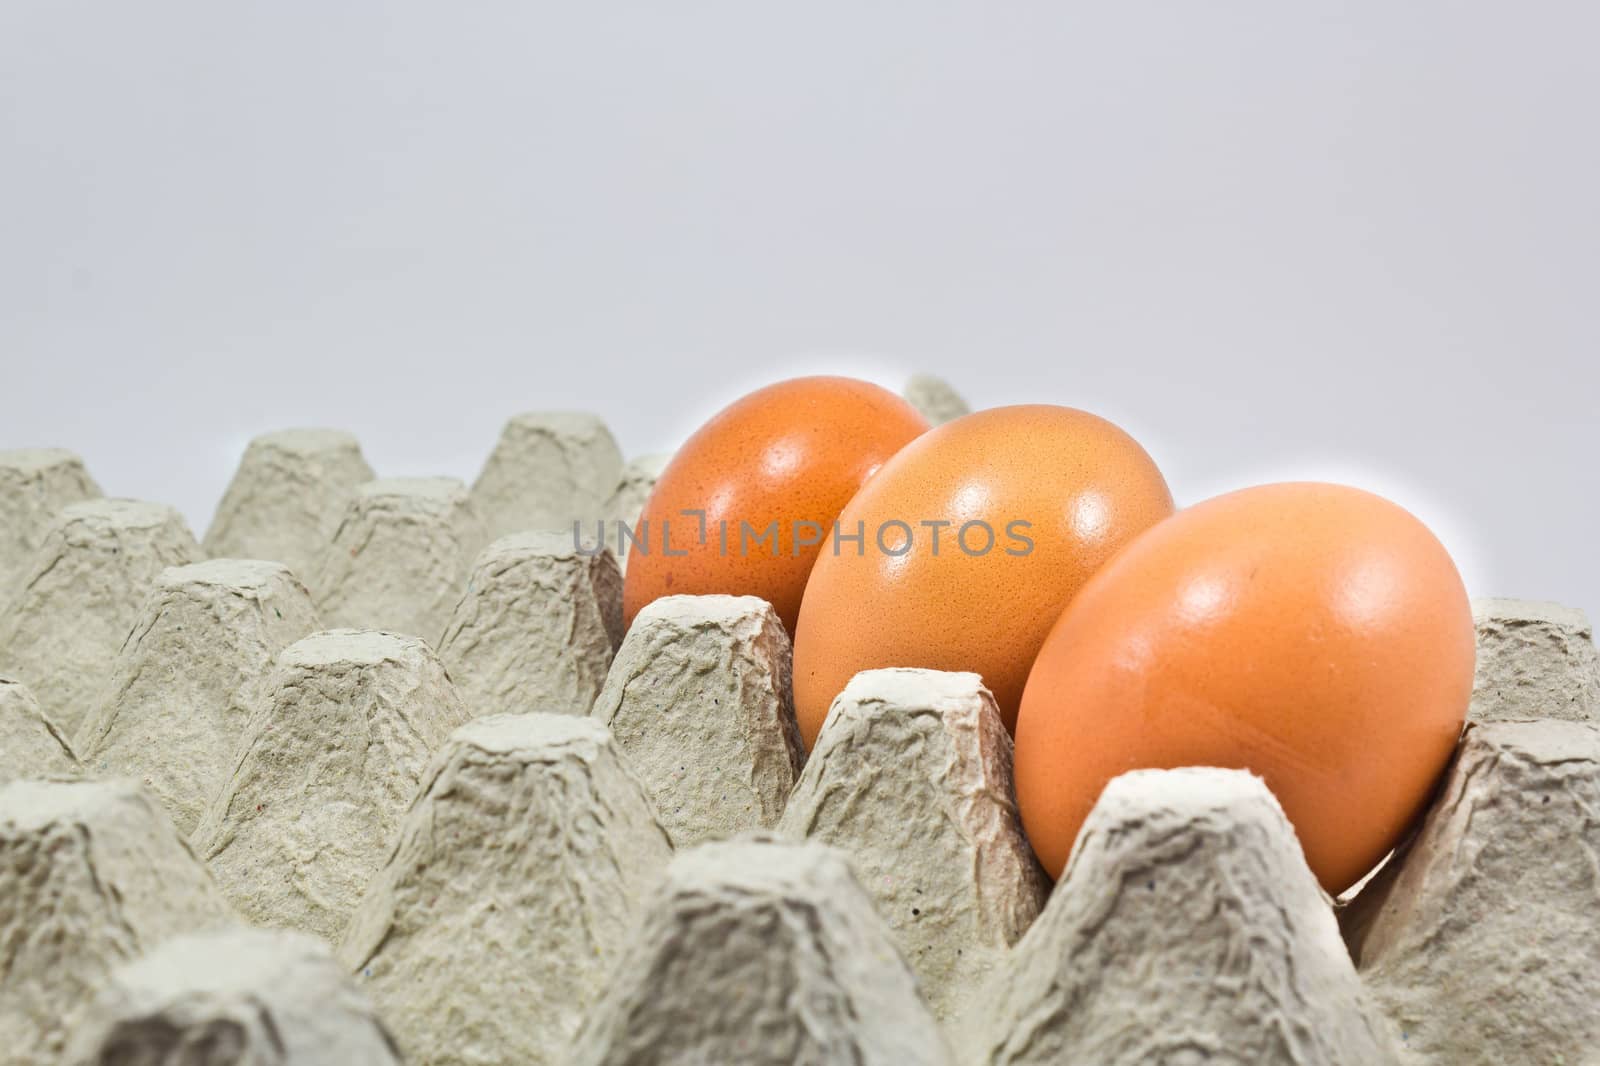 Shelves eggs to prevent egg broken